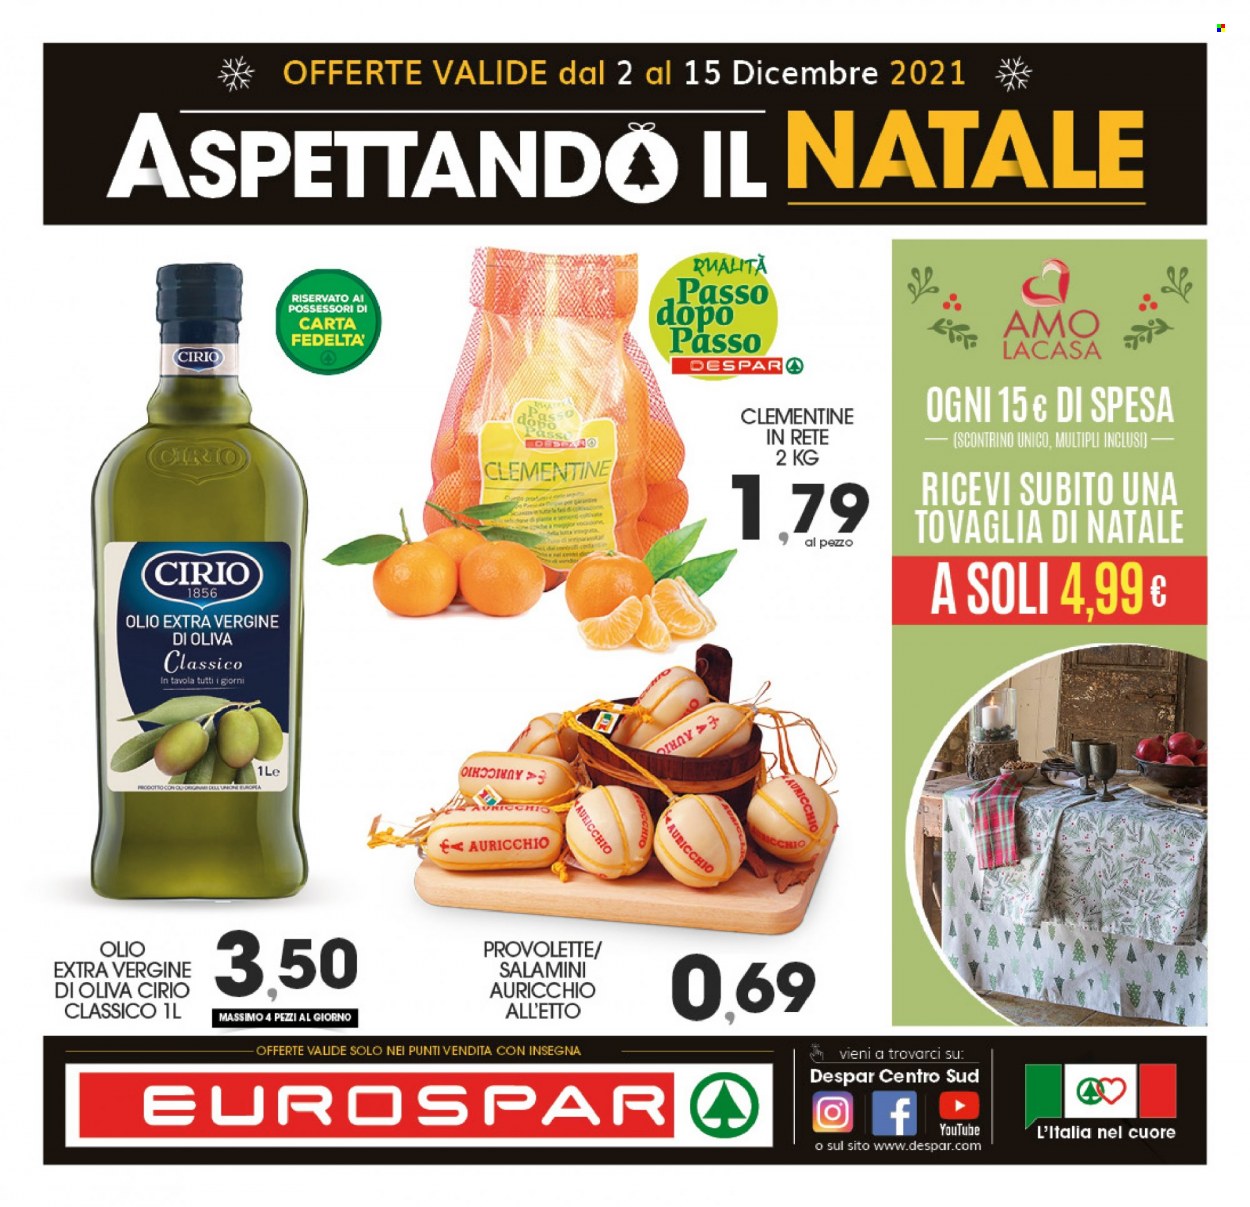 thumbnail - Volantino Eurospar - 2/12/2021 - 15/12/2021 - Prodotti in offerta - clementine, Cirio, olio, olio extra vergine di oliva, tovaglia. Pagina 1.